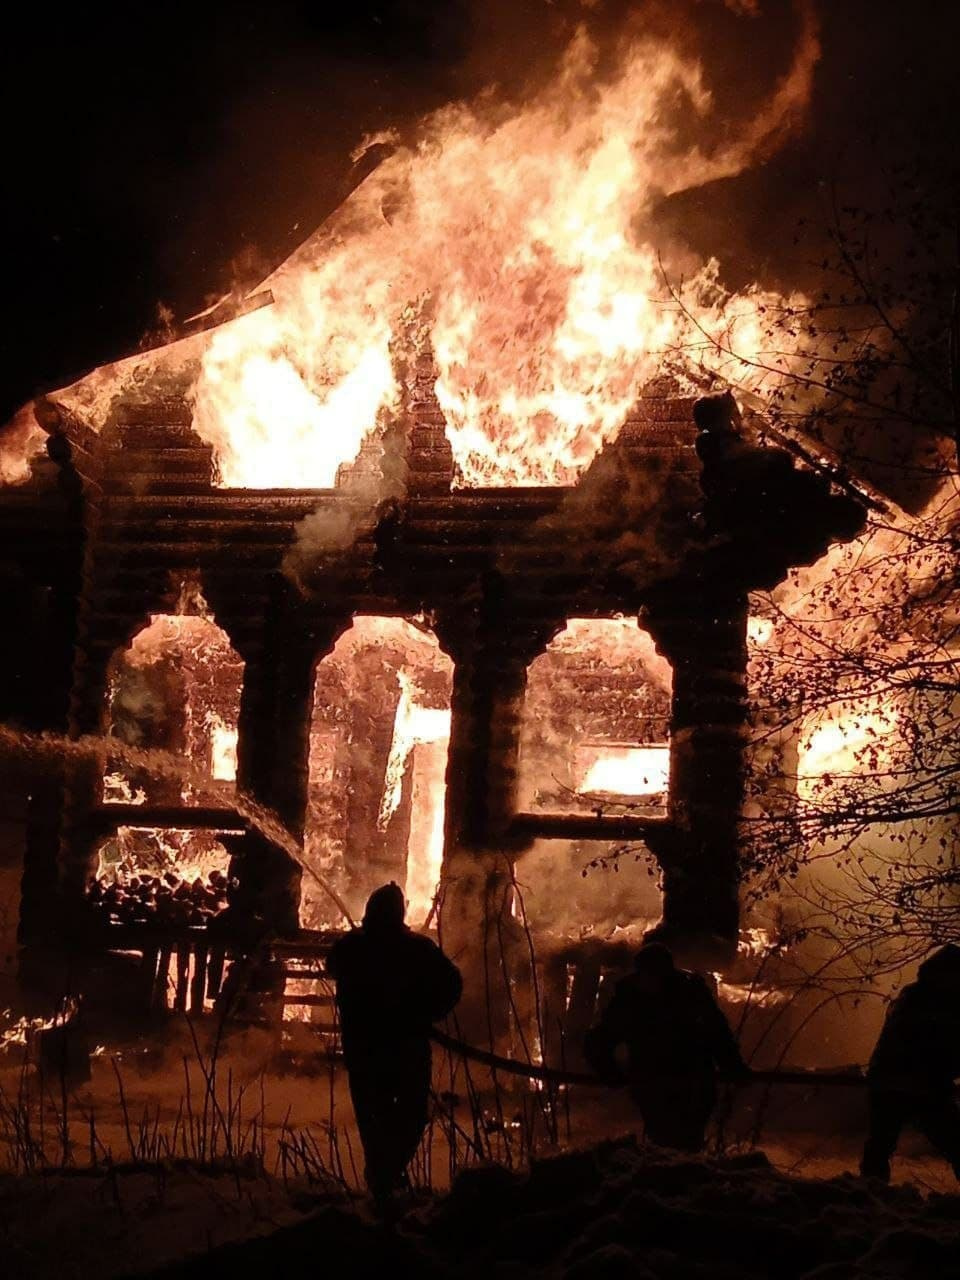 Гостевой дом выгорел почти полностью